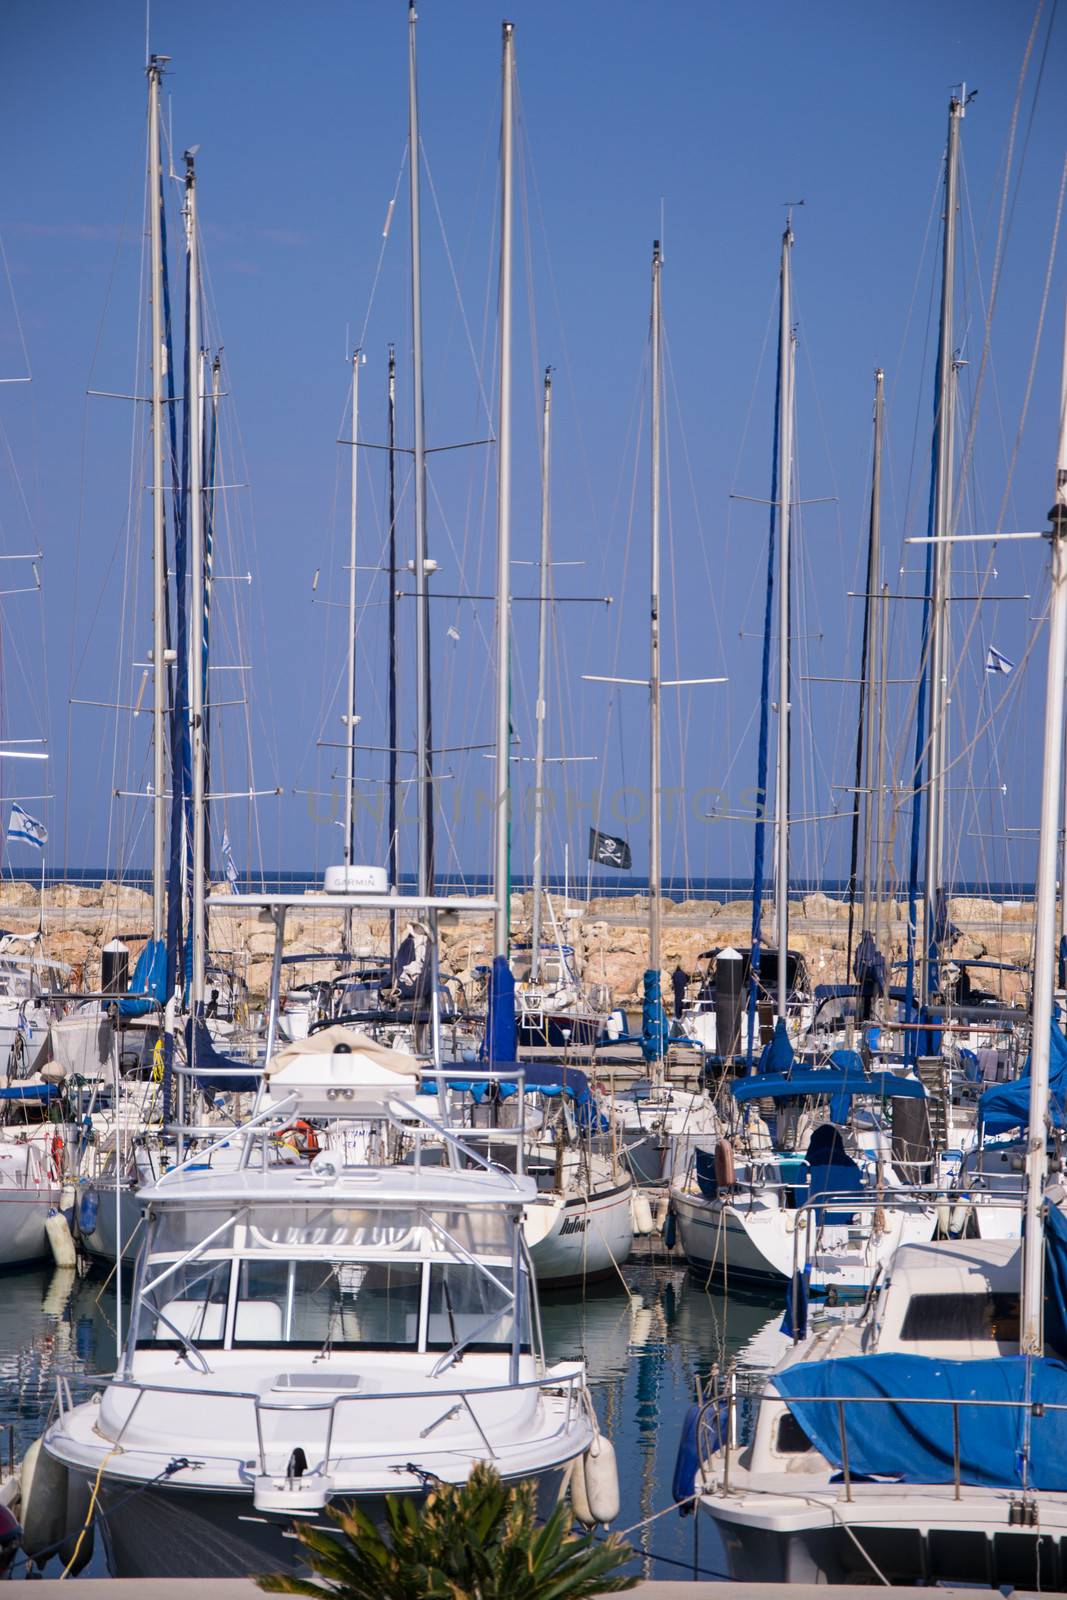 The yachts at the coast Tel-Aviv by slavamalai